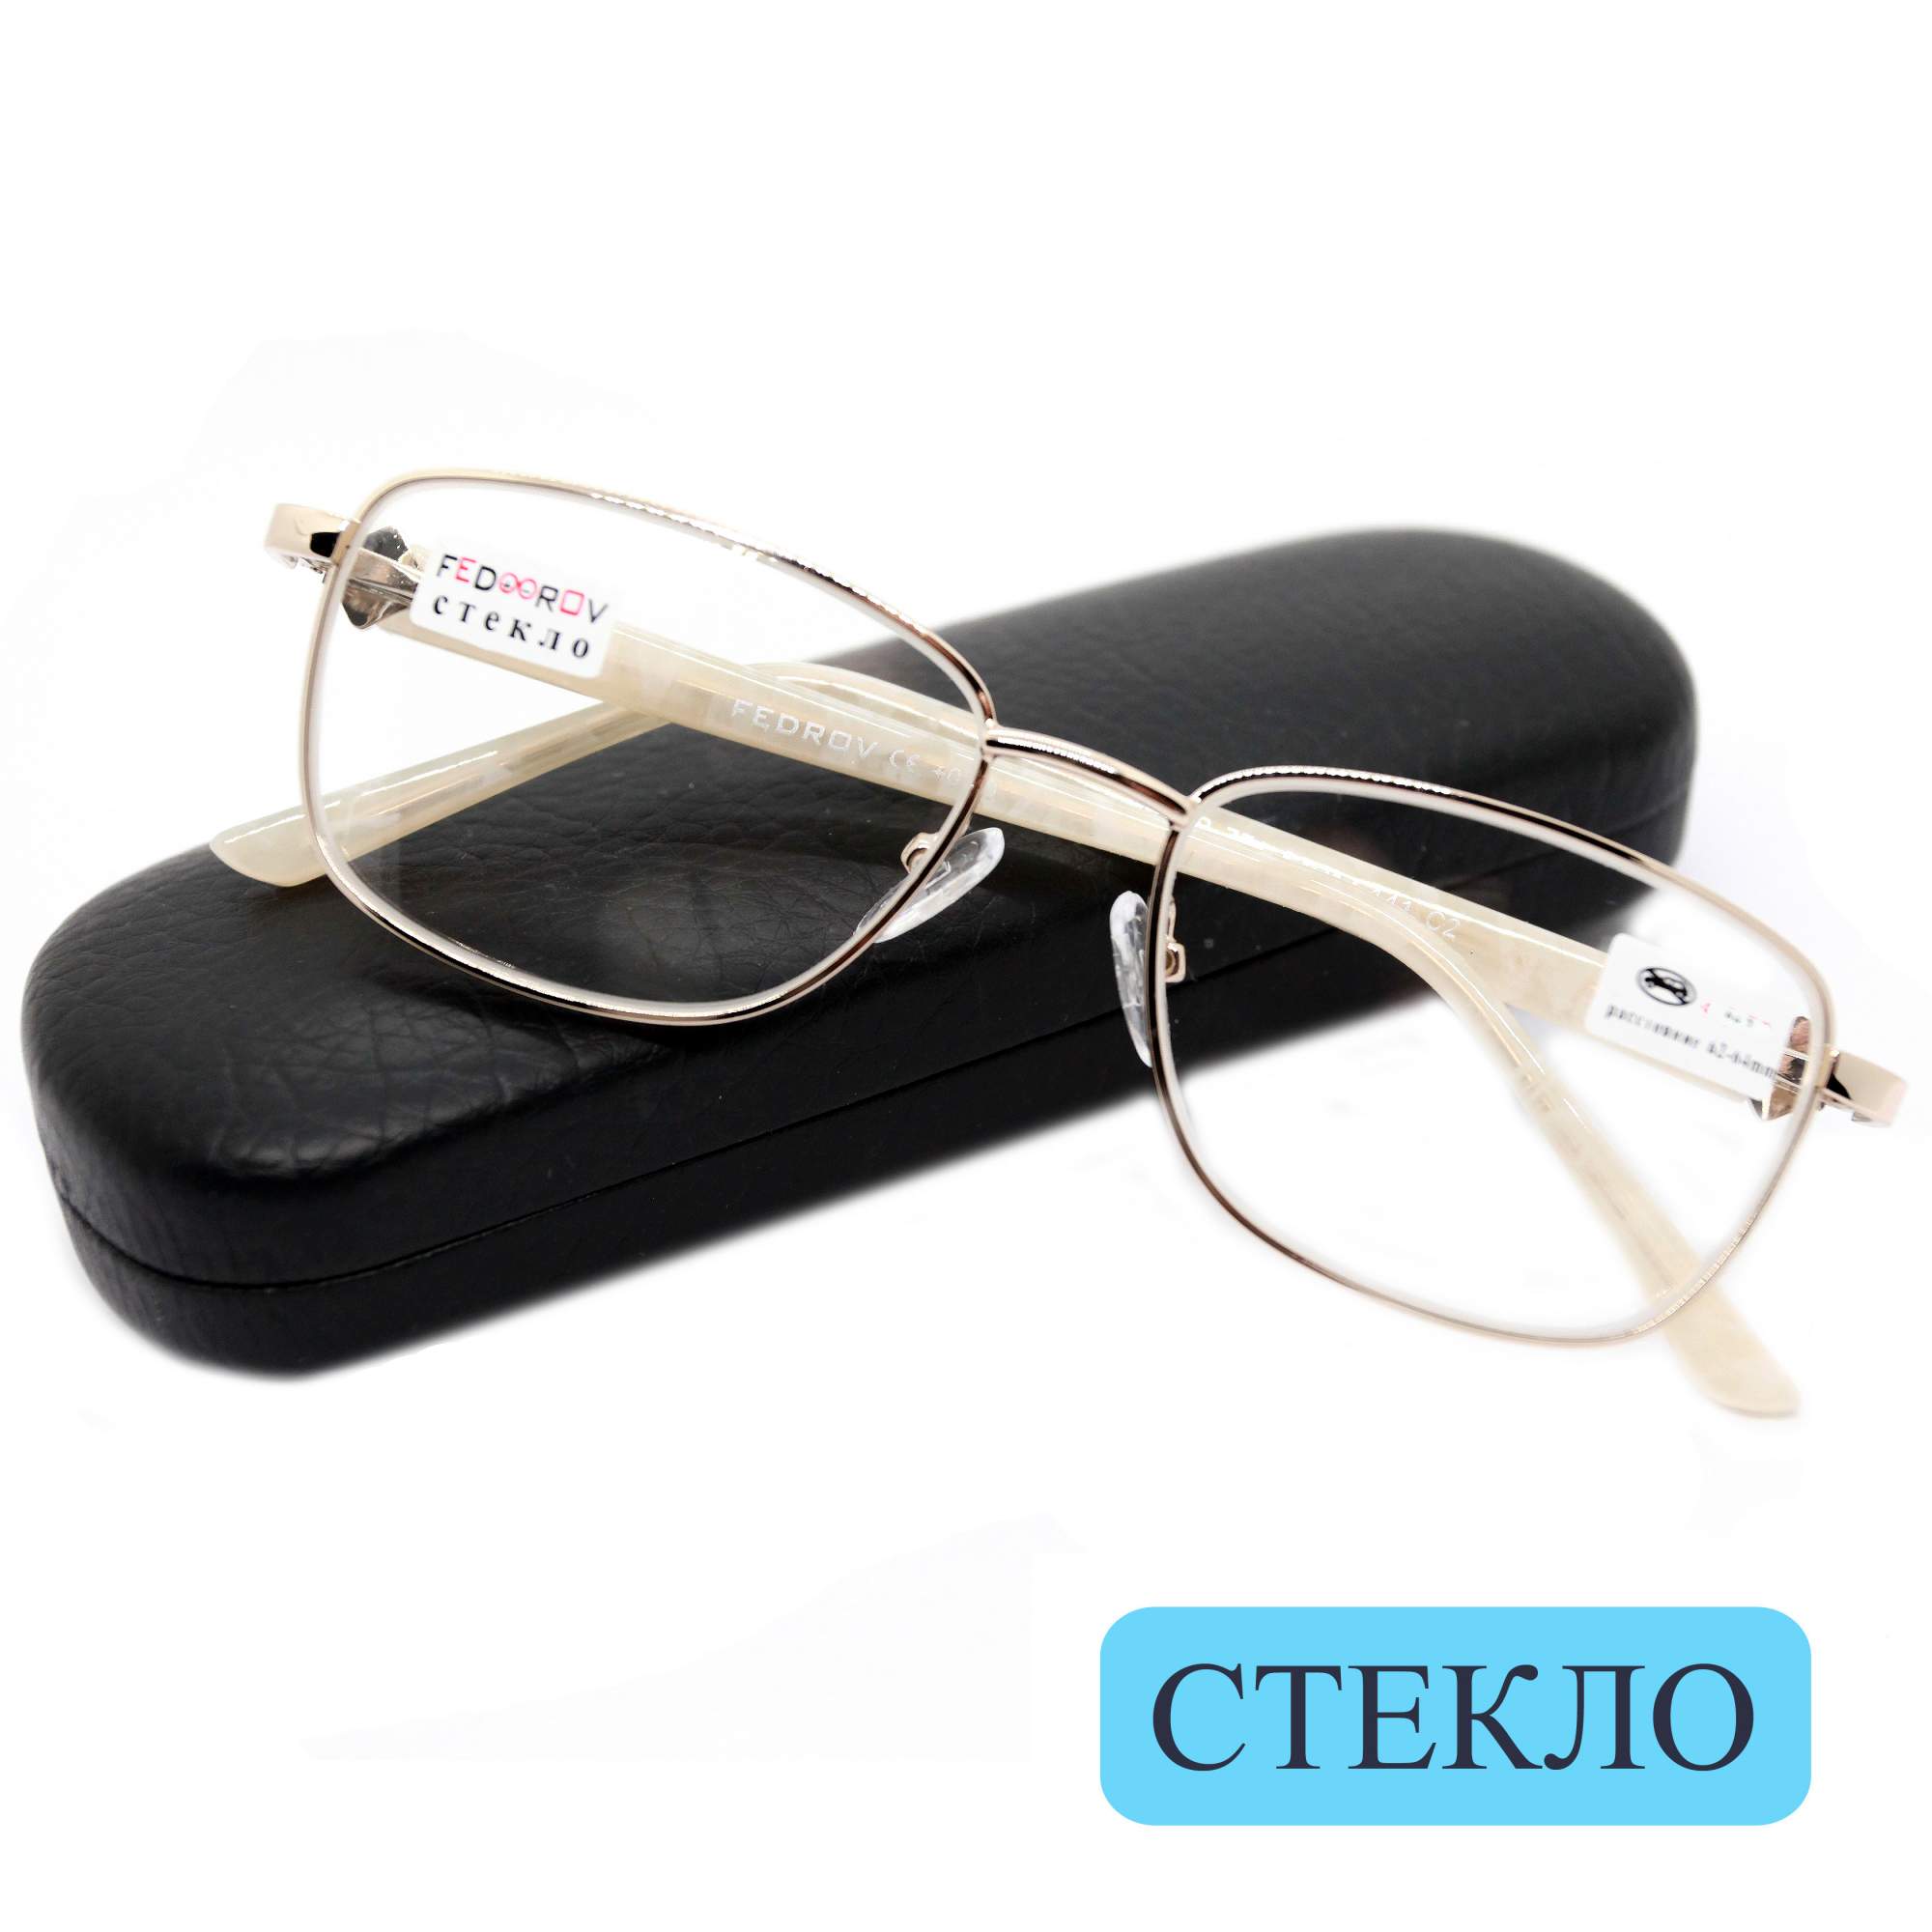 Готовые очки Fedrov 771, со стеклянной линзой, +2.75, c футляром, цвет золотой, РЦ 62-64